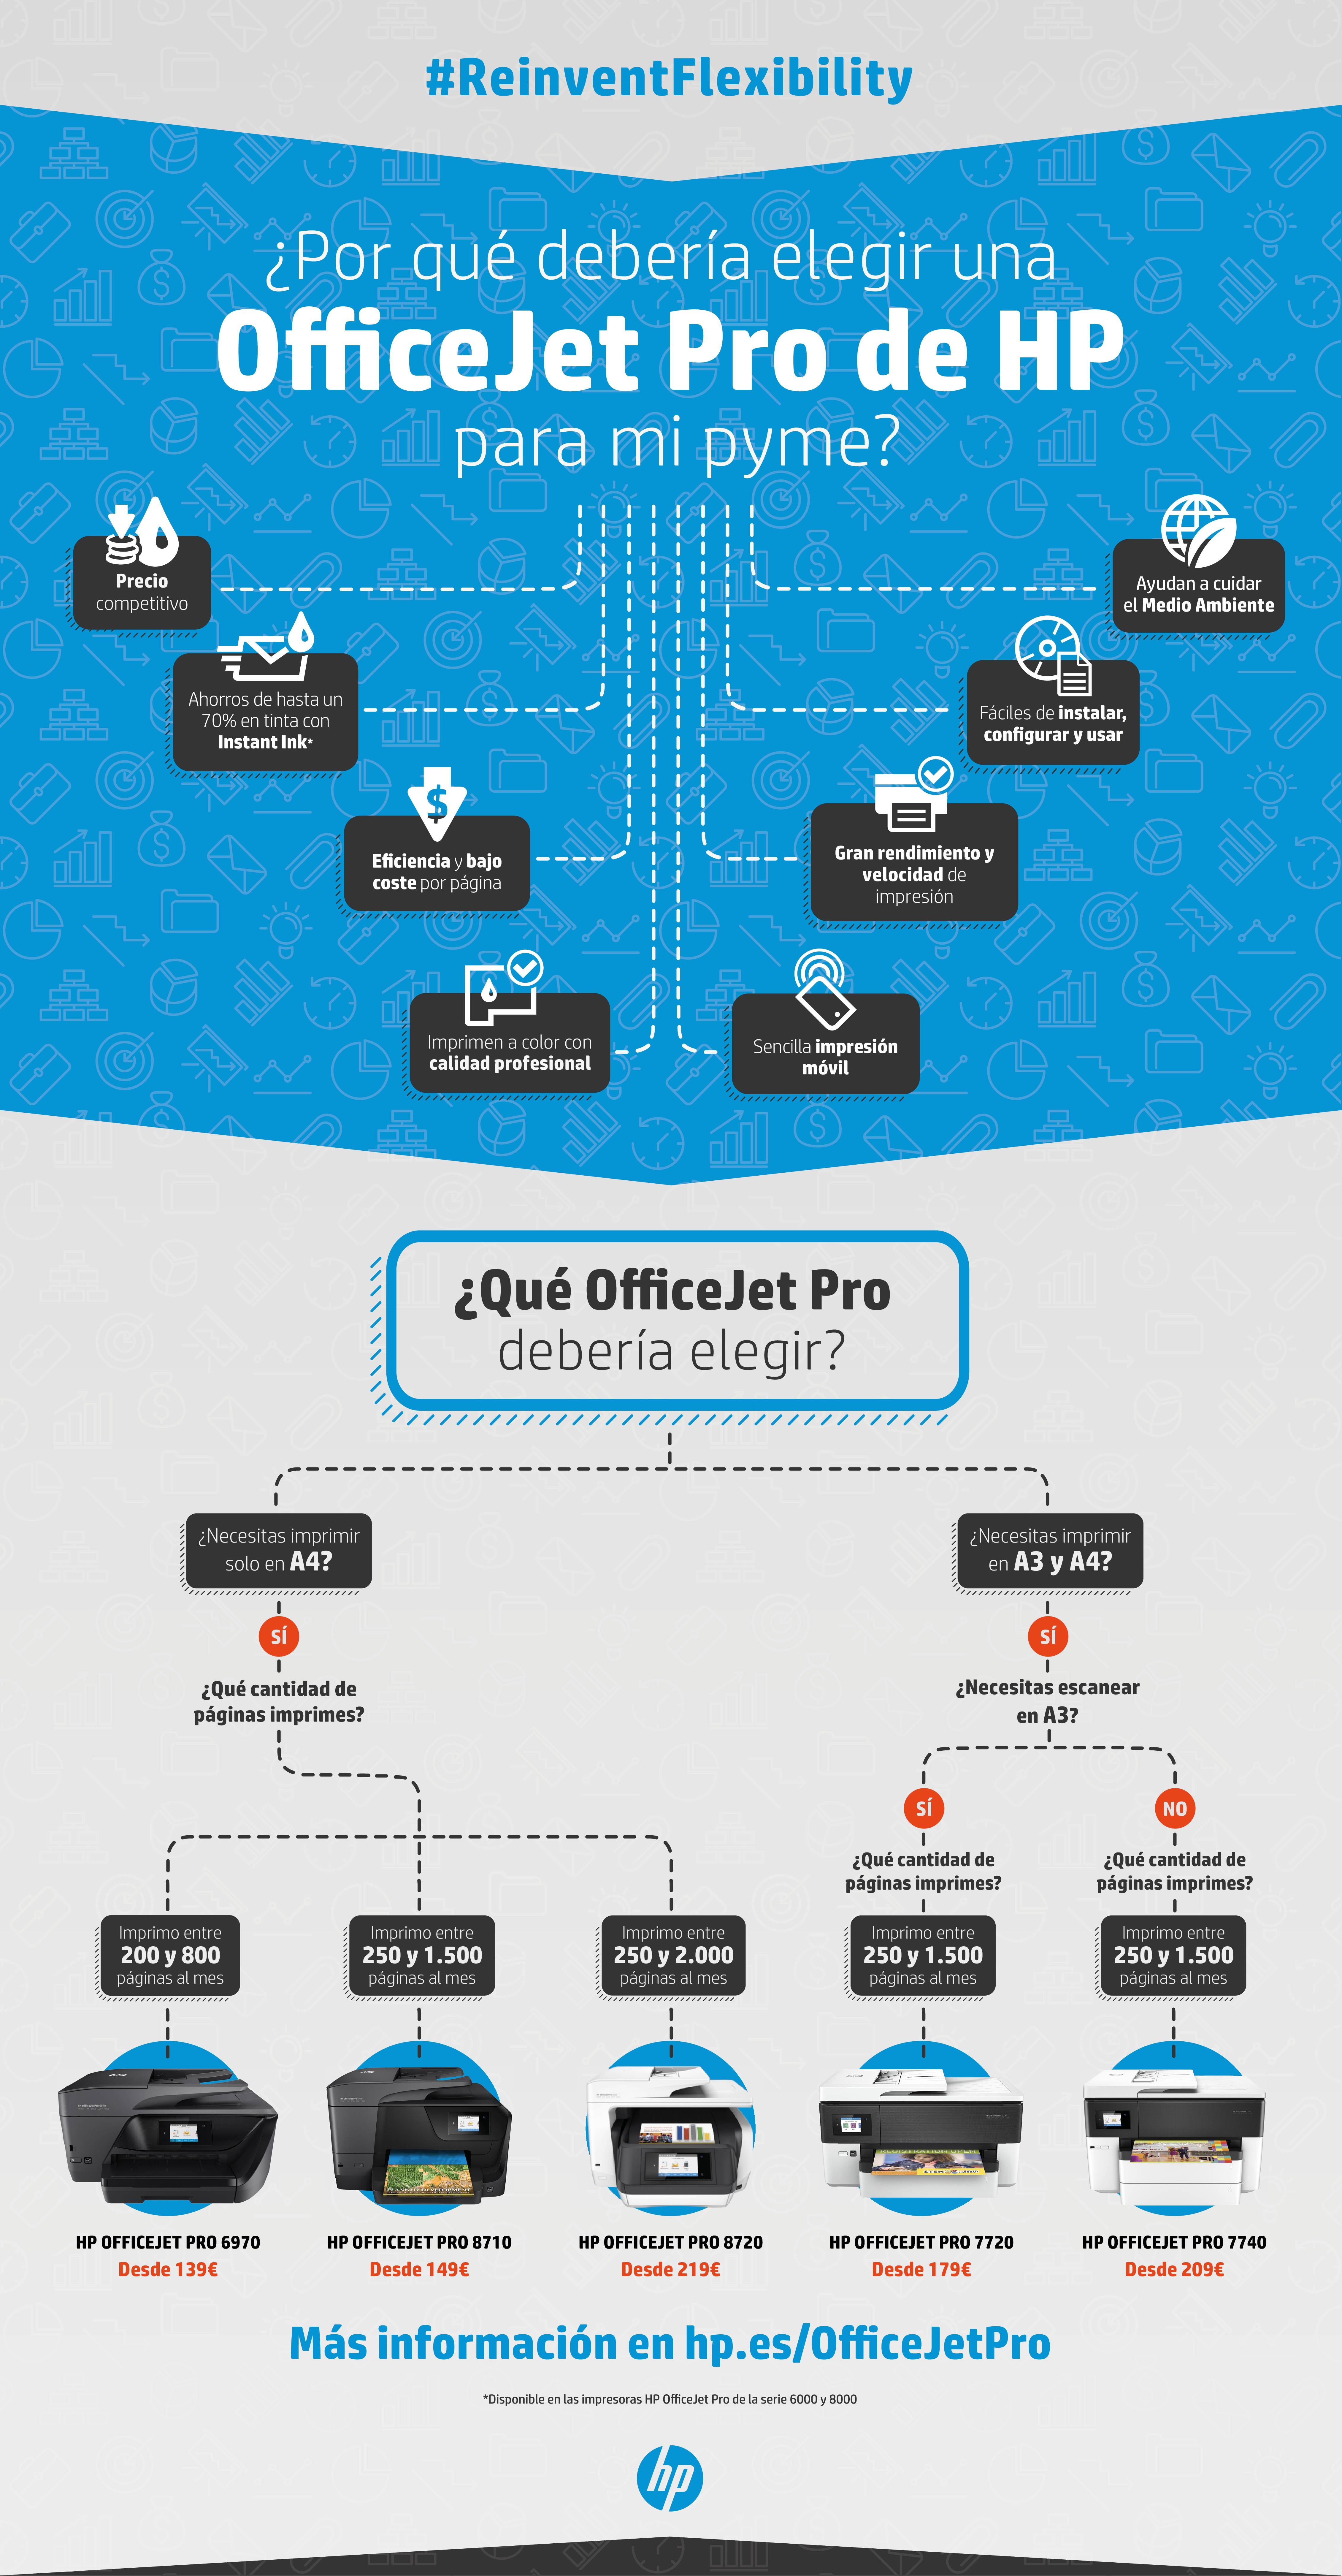 HP OfficeJet Pro